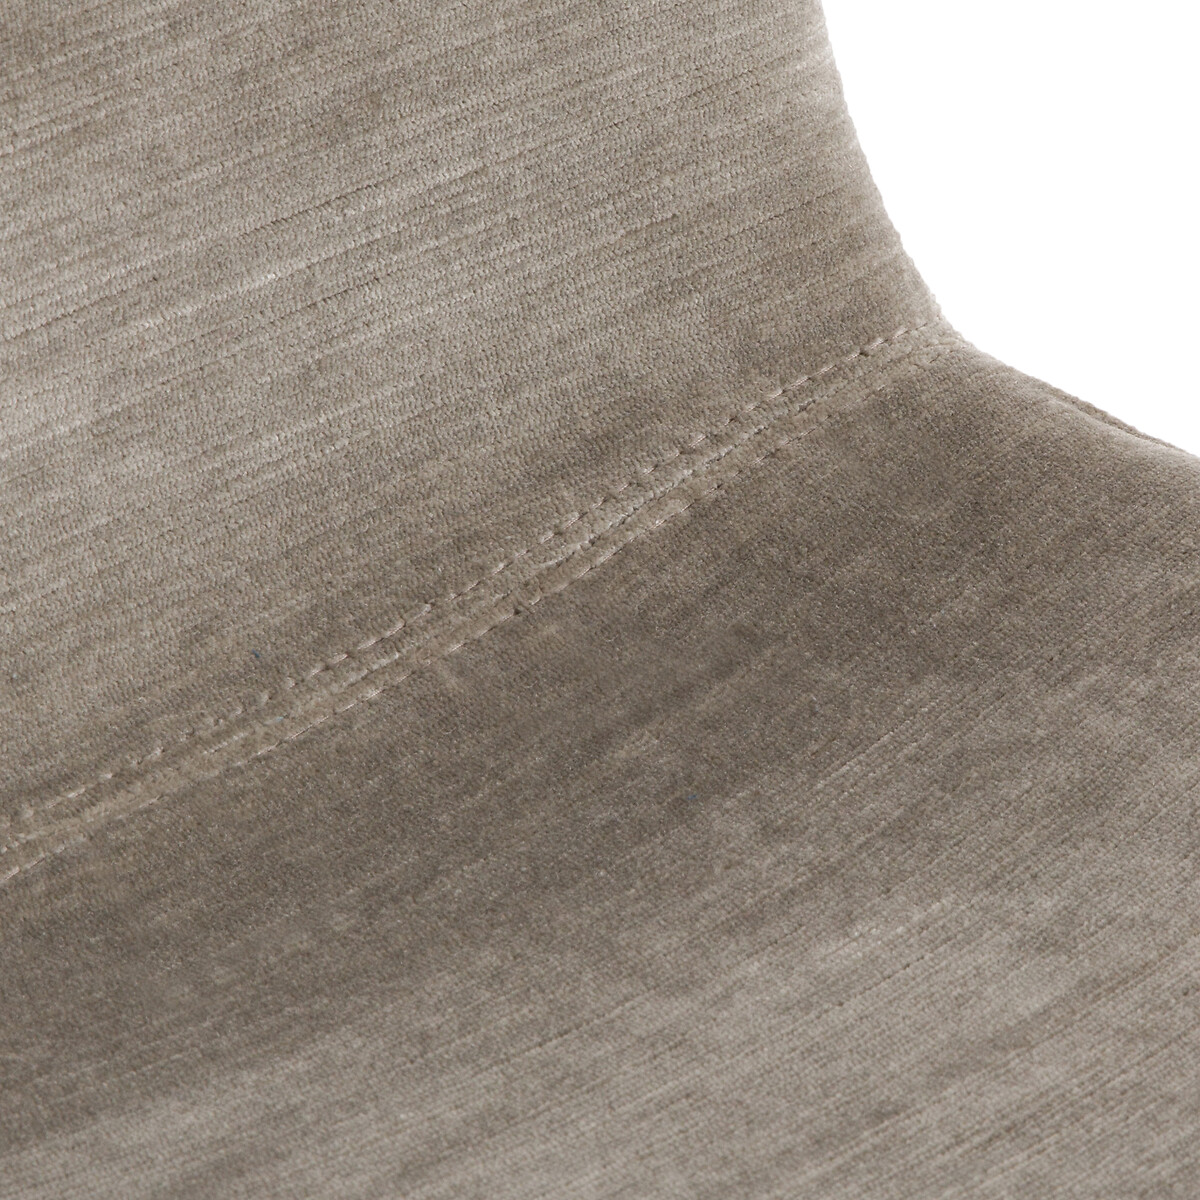 Стул LaRedoute Барный из велюровой ткани с опалинами В65 см Tibby единый размер серый - фото 5